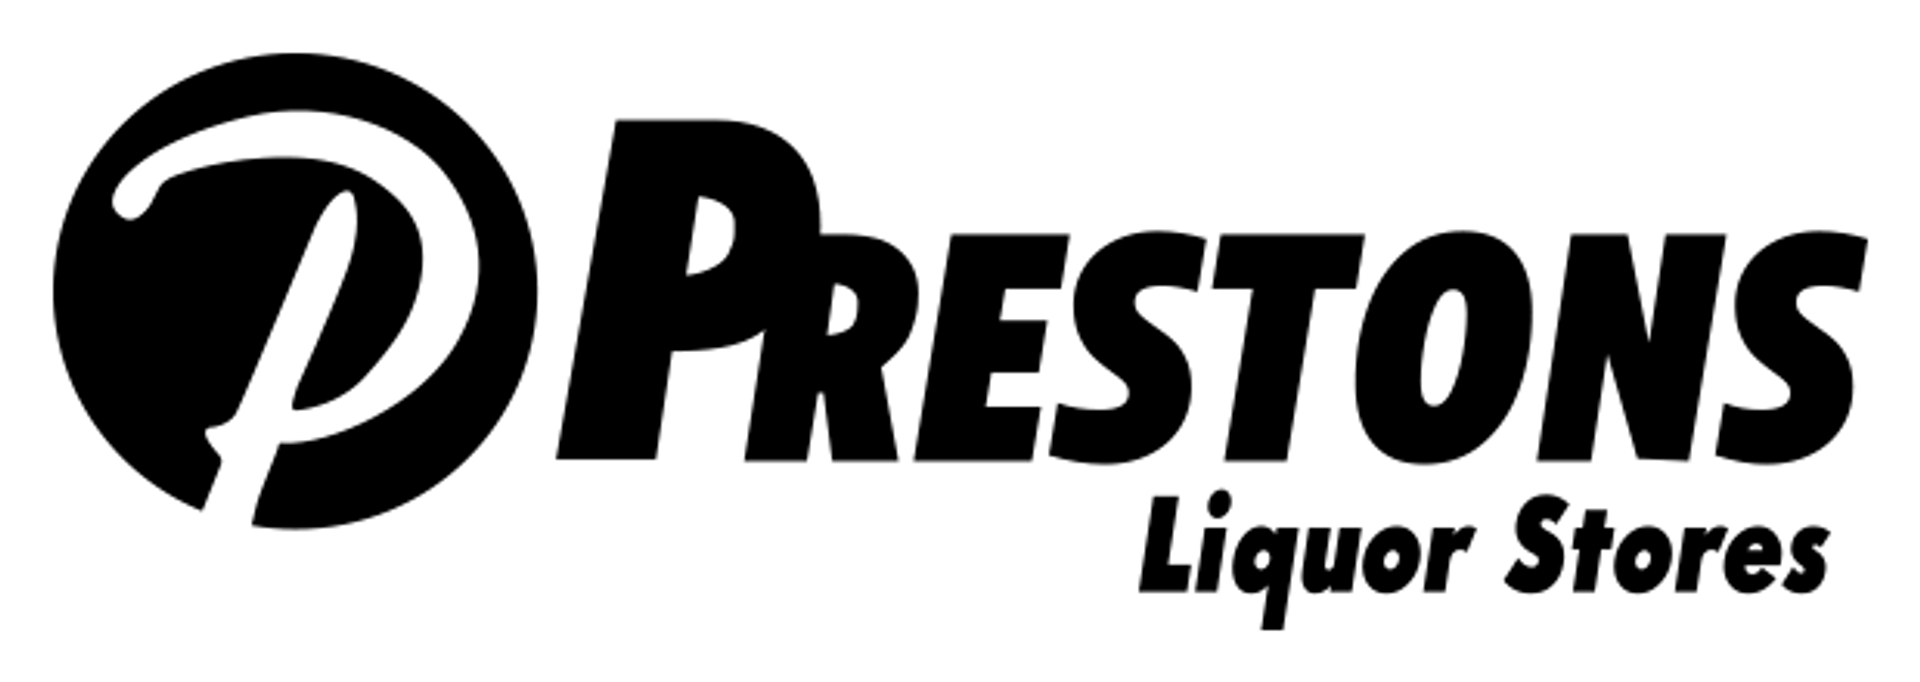 PRESTONS logo. Current catalogue